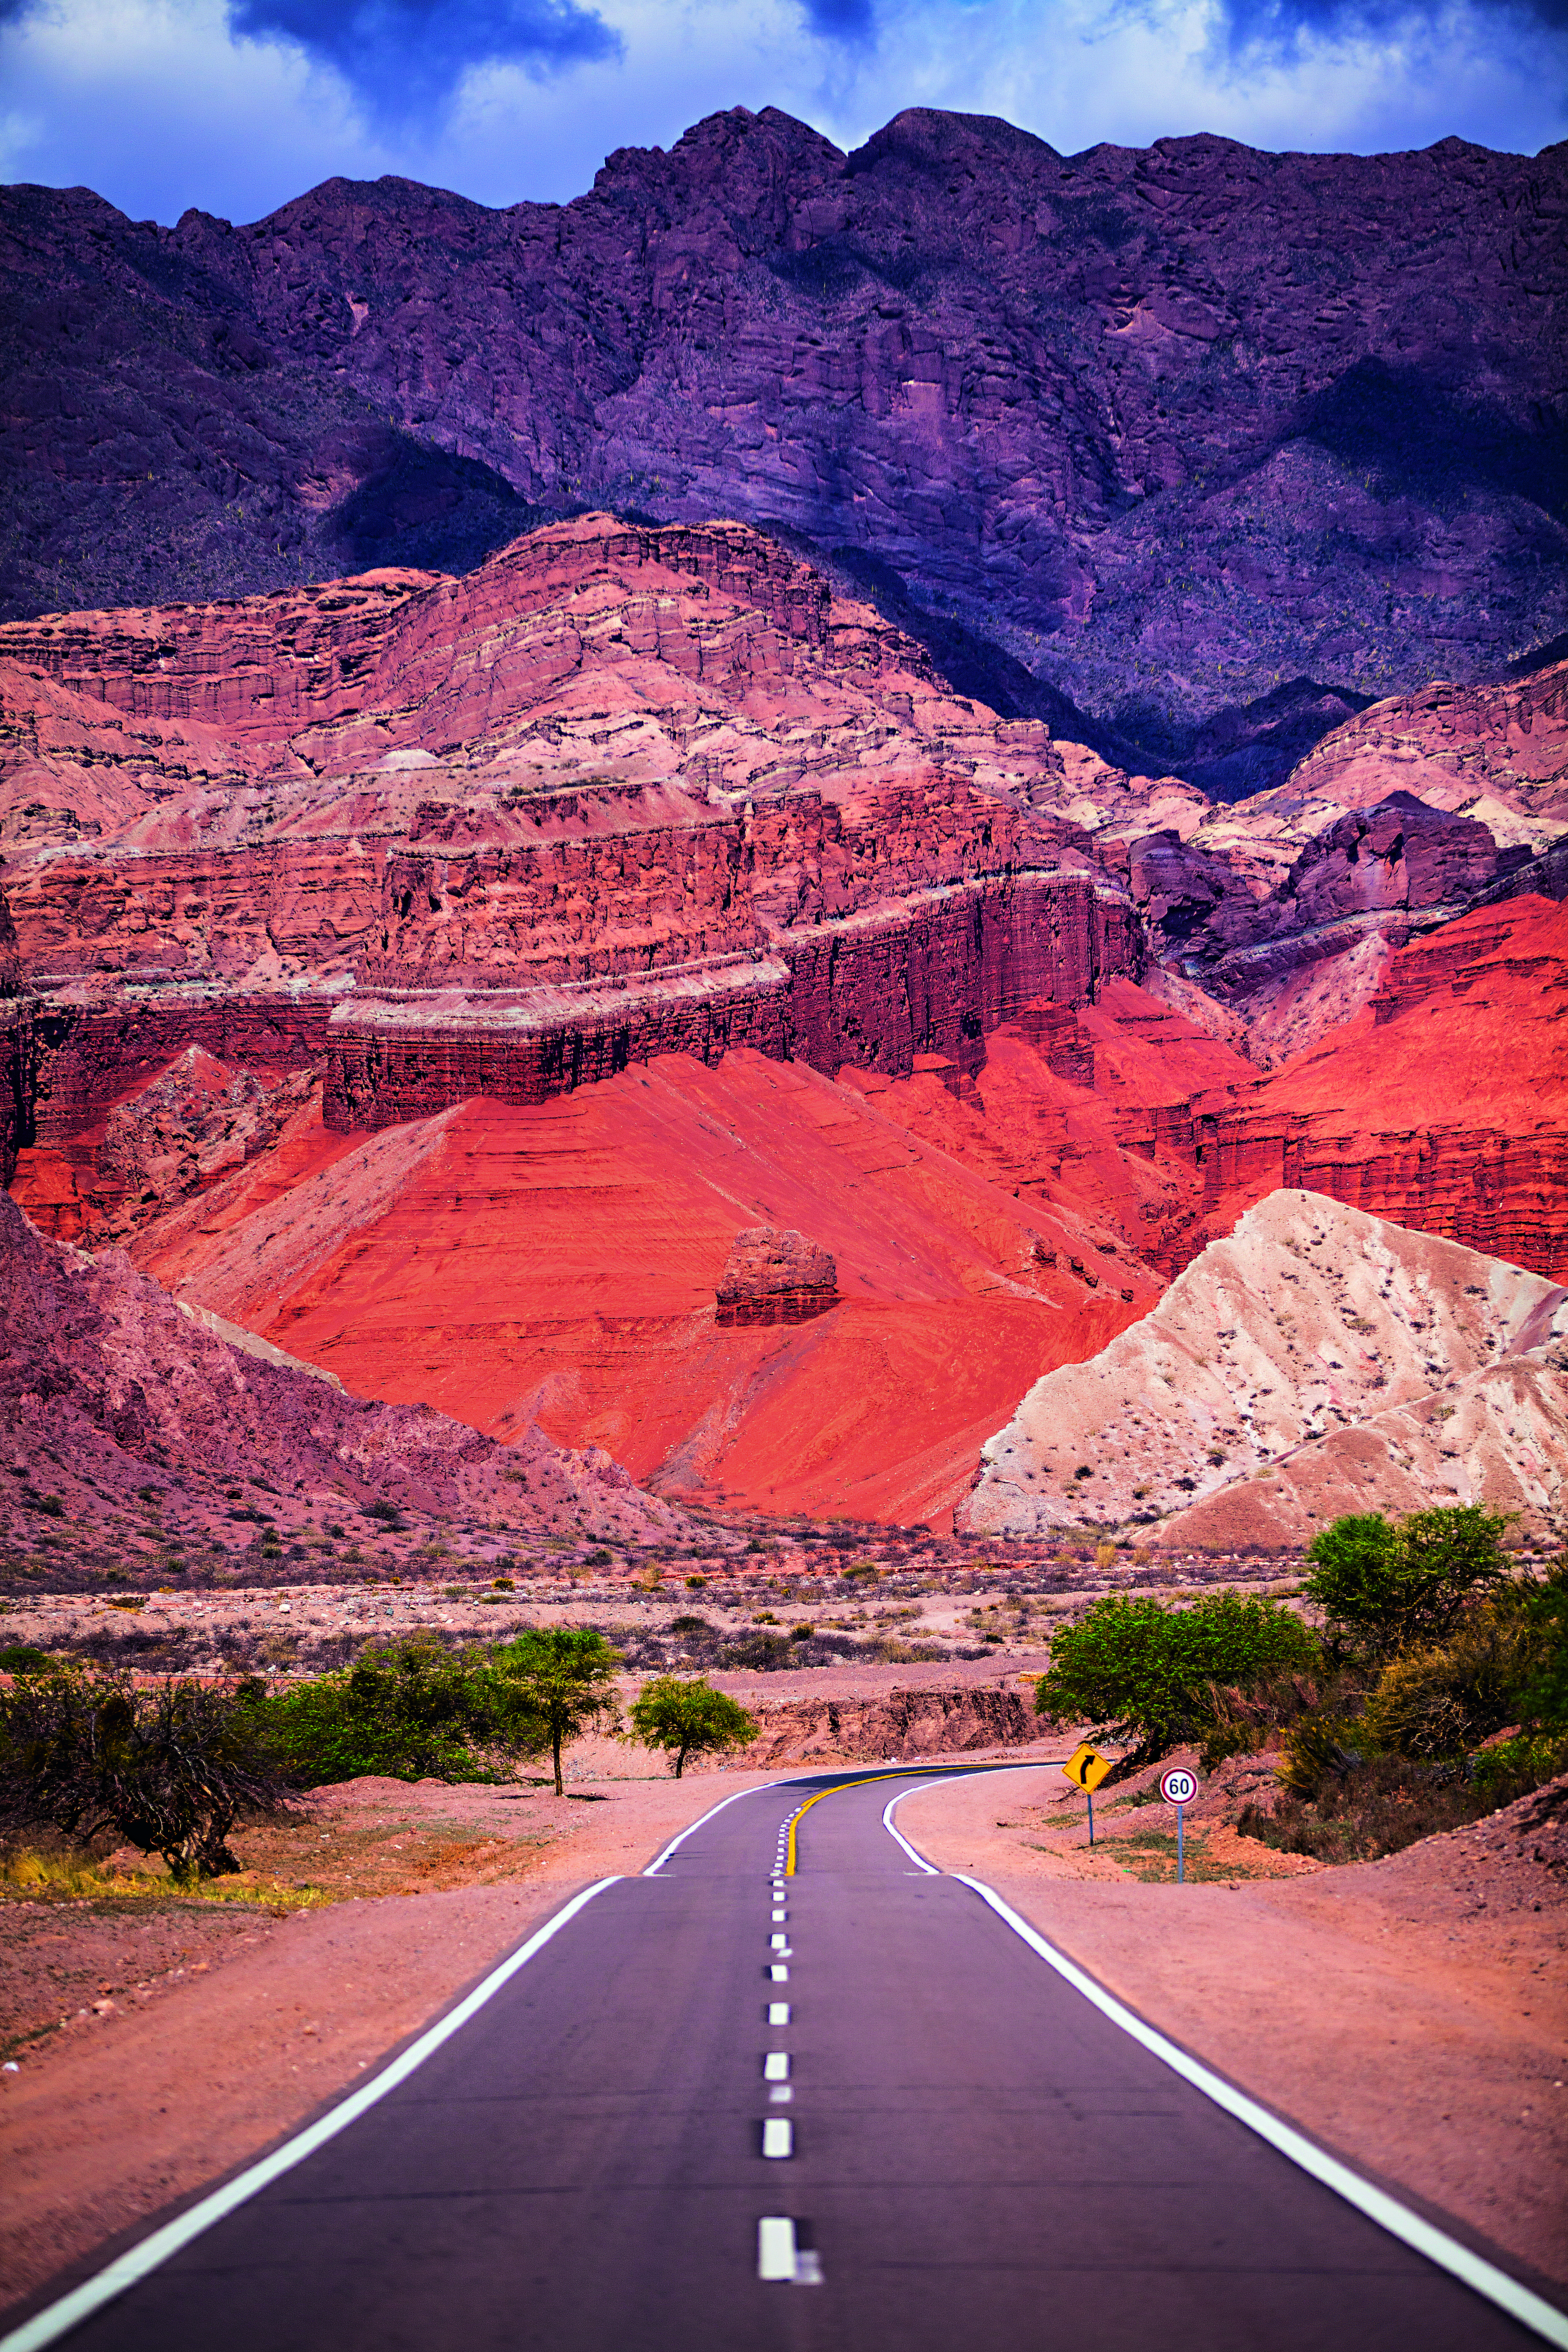 Uma estrada se estende pelo meio de paredões rochosos avermelhados